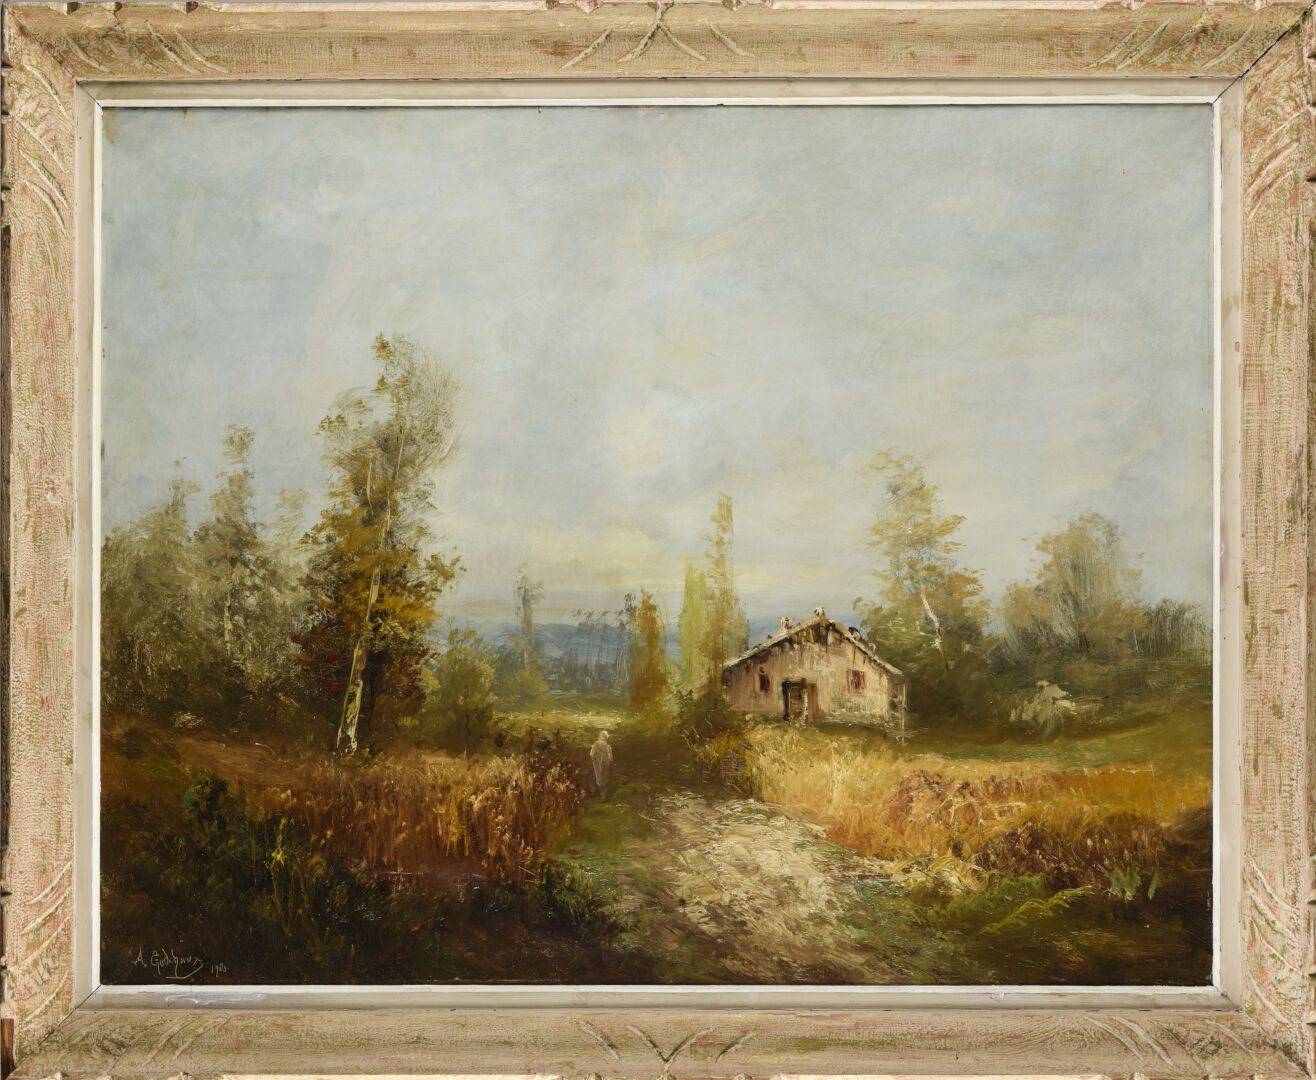 Null 阿尔弗雷德-戈德考 (1860-1938)
景观与木屋 
布面油画，签名并注明日期1903年
72 x 90厘米